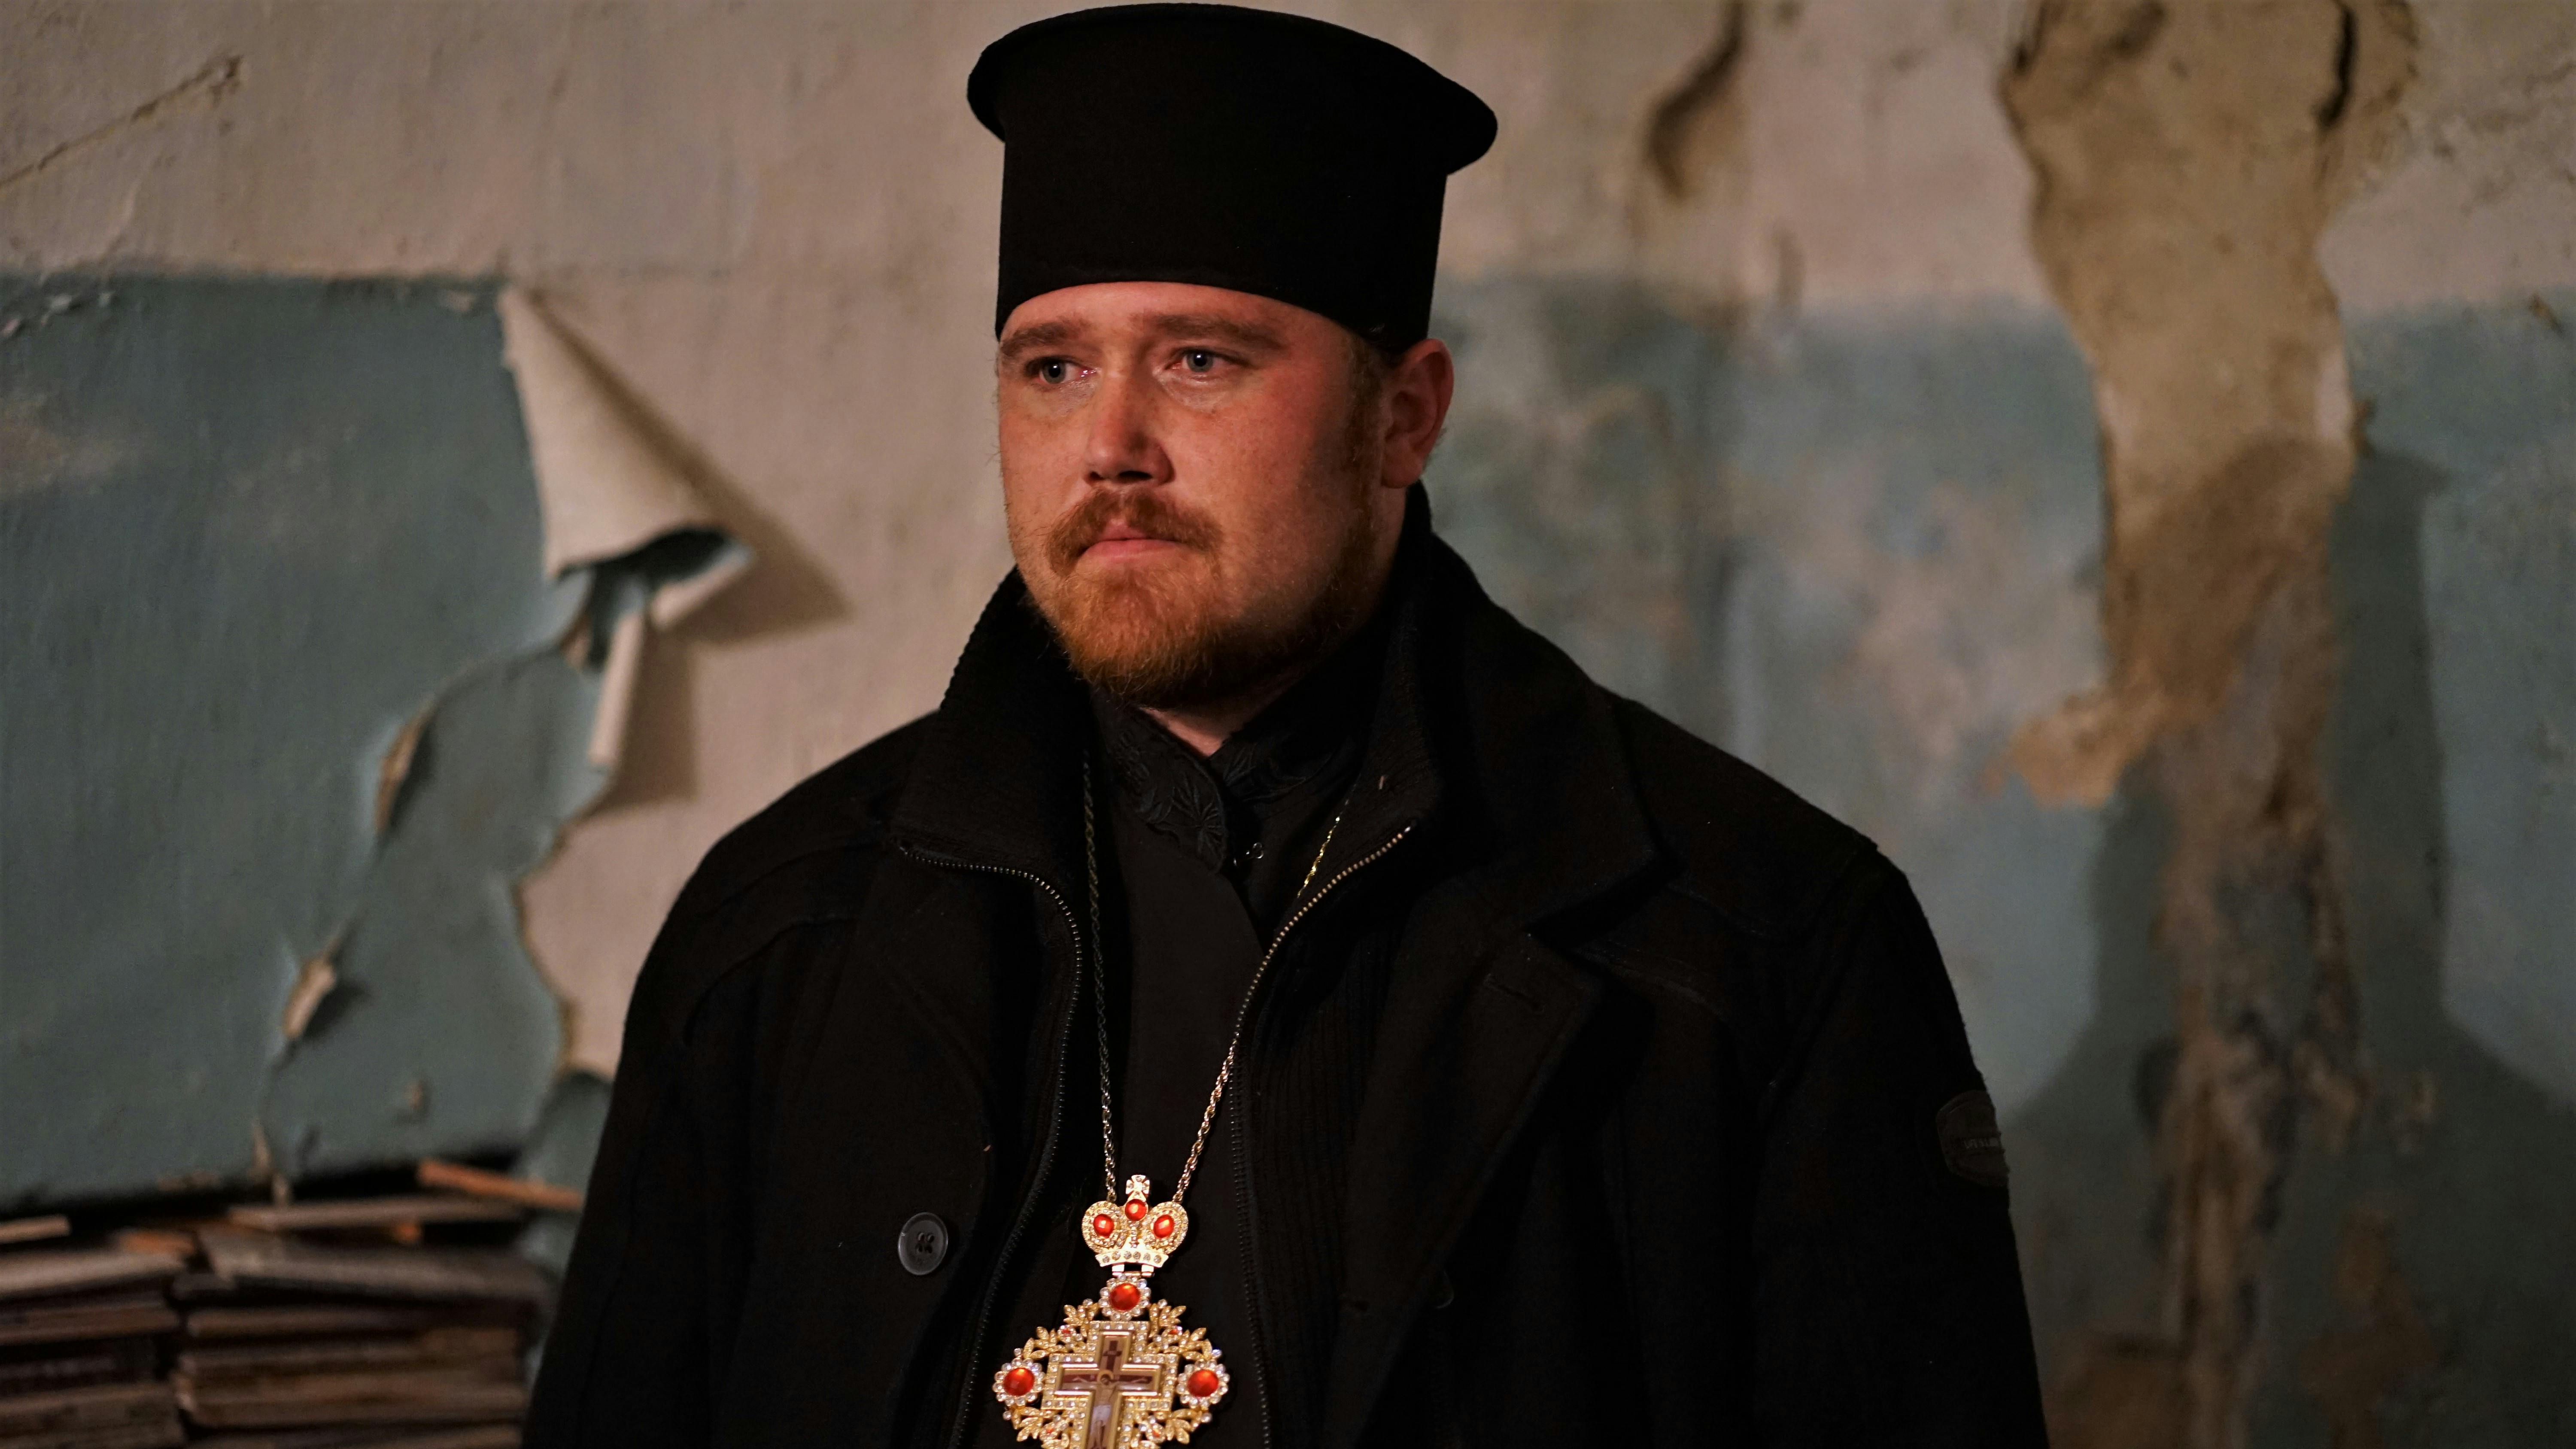 Dionissij Wassyljew trägt einen eine orthodoxen Popen und ein Kreuz um den Hals. Der Geistliche steht in dem Folterkeller in welchem er drei Tage verhört und gefoltert wurde. Sein Blick ist fest, doch wirkt er zerbrechlich.